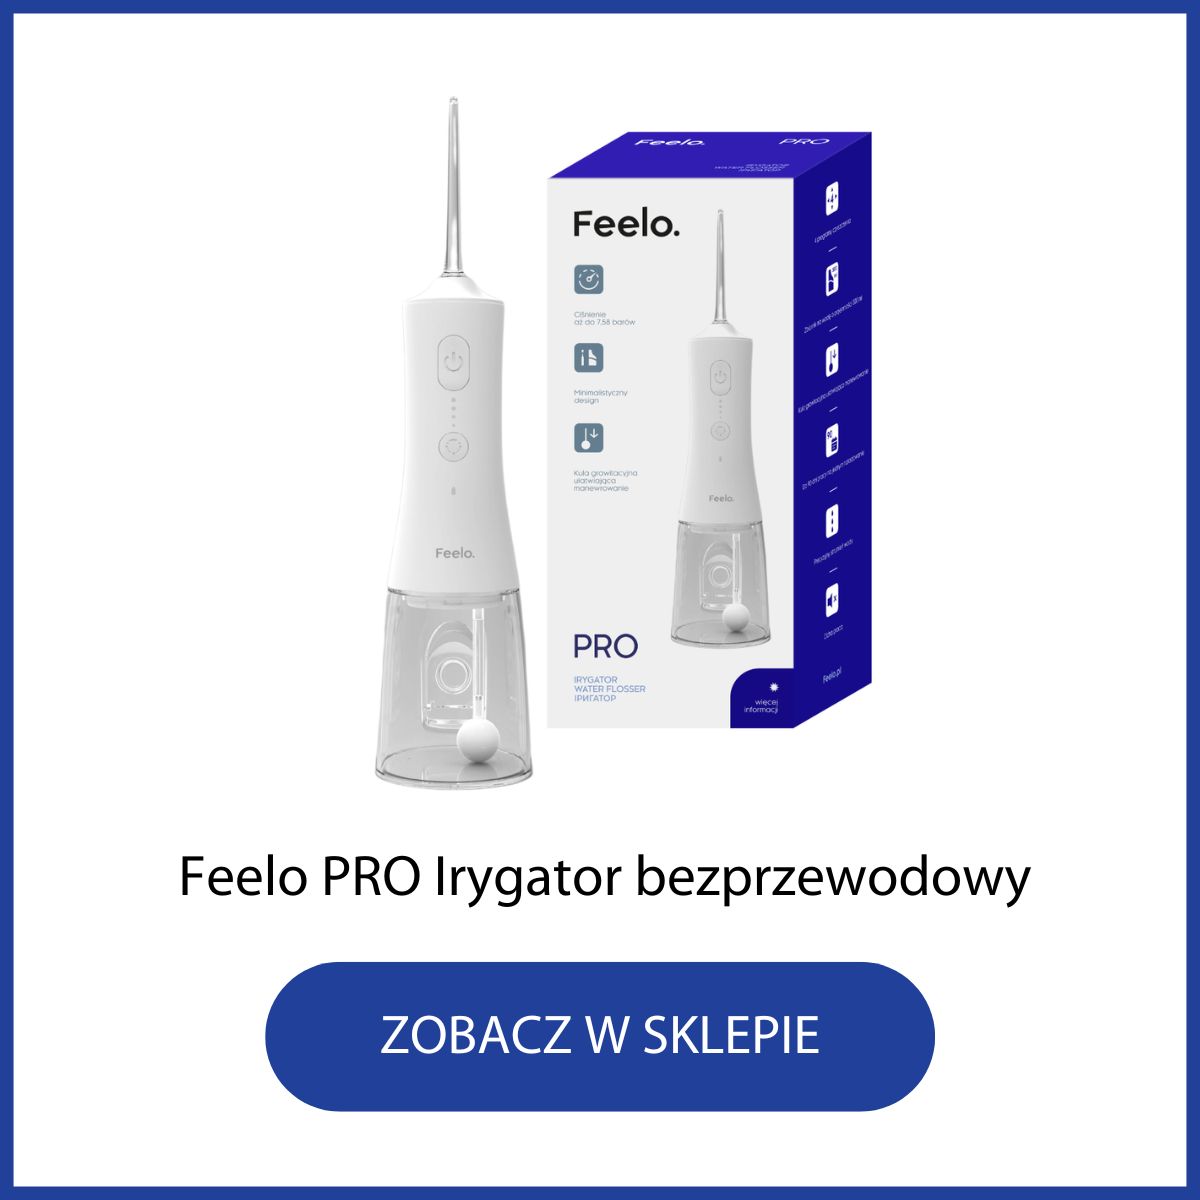 Feelo Pro irygator bezprzewodowy